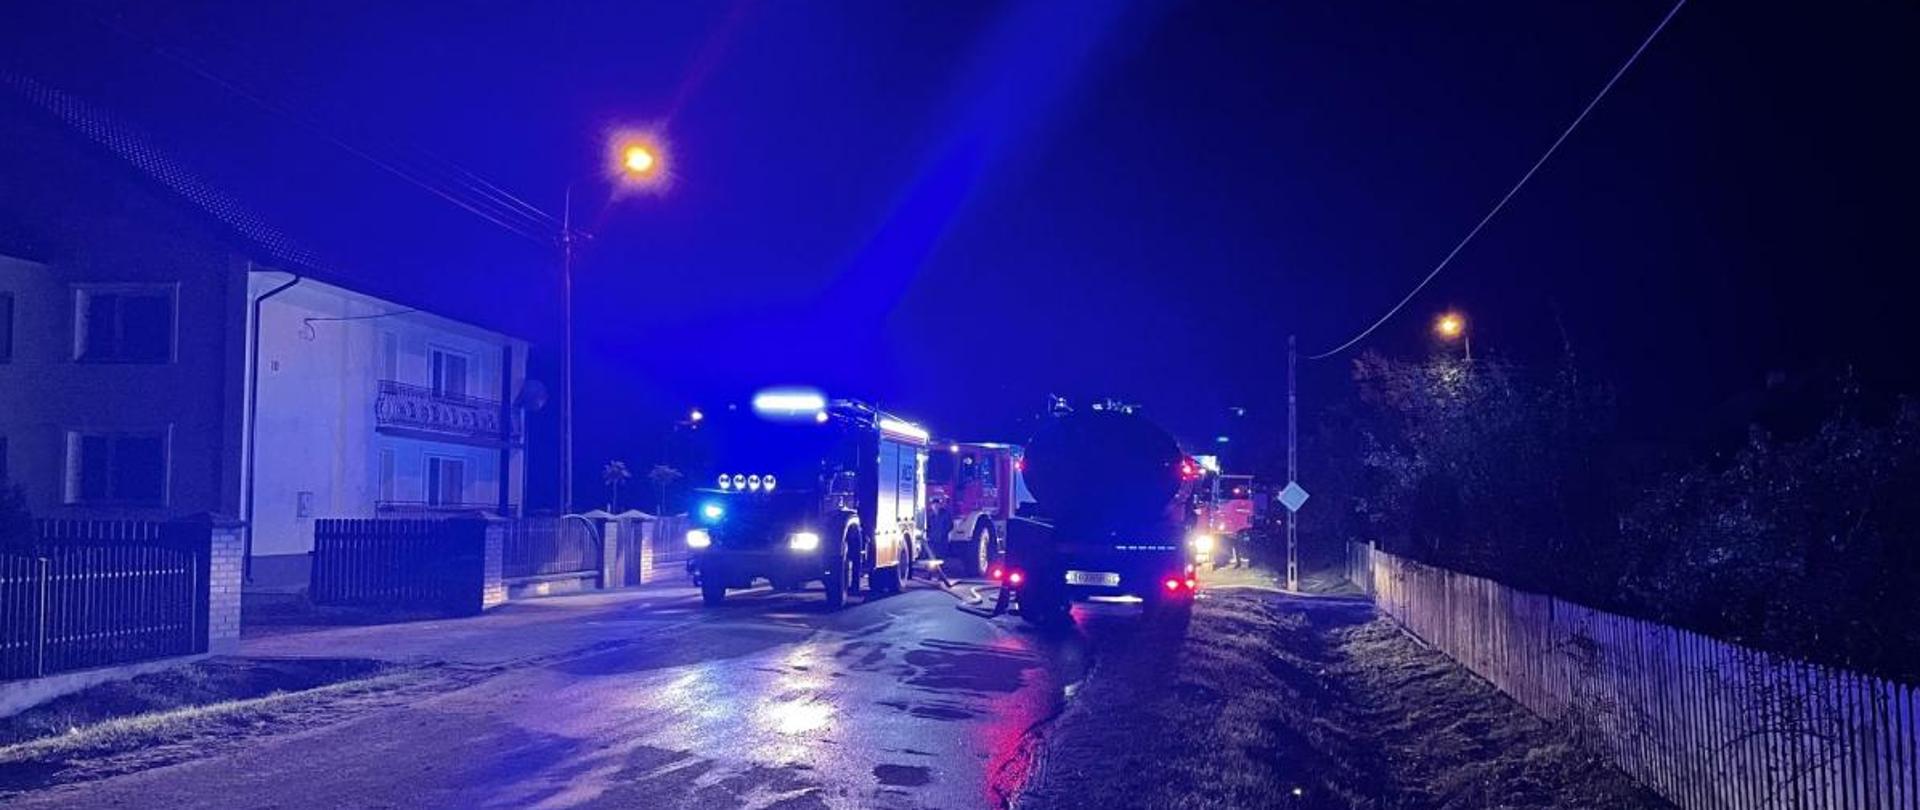 Zdjęcie przedstawia samochody bojowe straży pożarnej stojące na drodze z włączonymi światłami alarmowymi. Zdjęcie wykonano w zmroku.